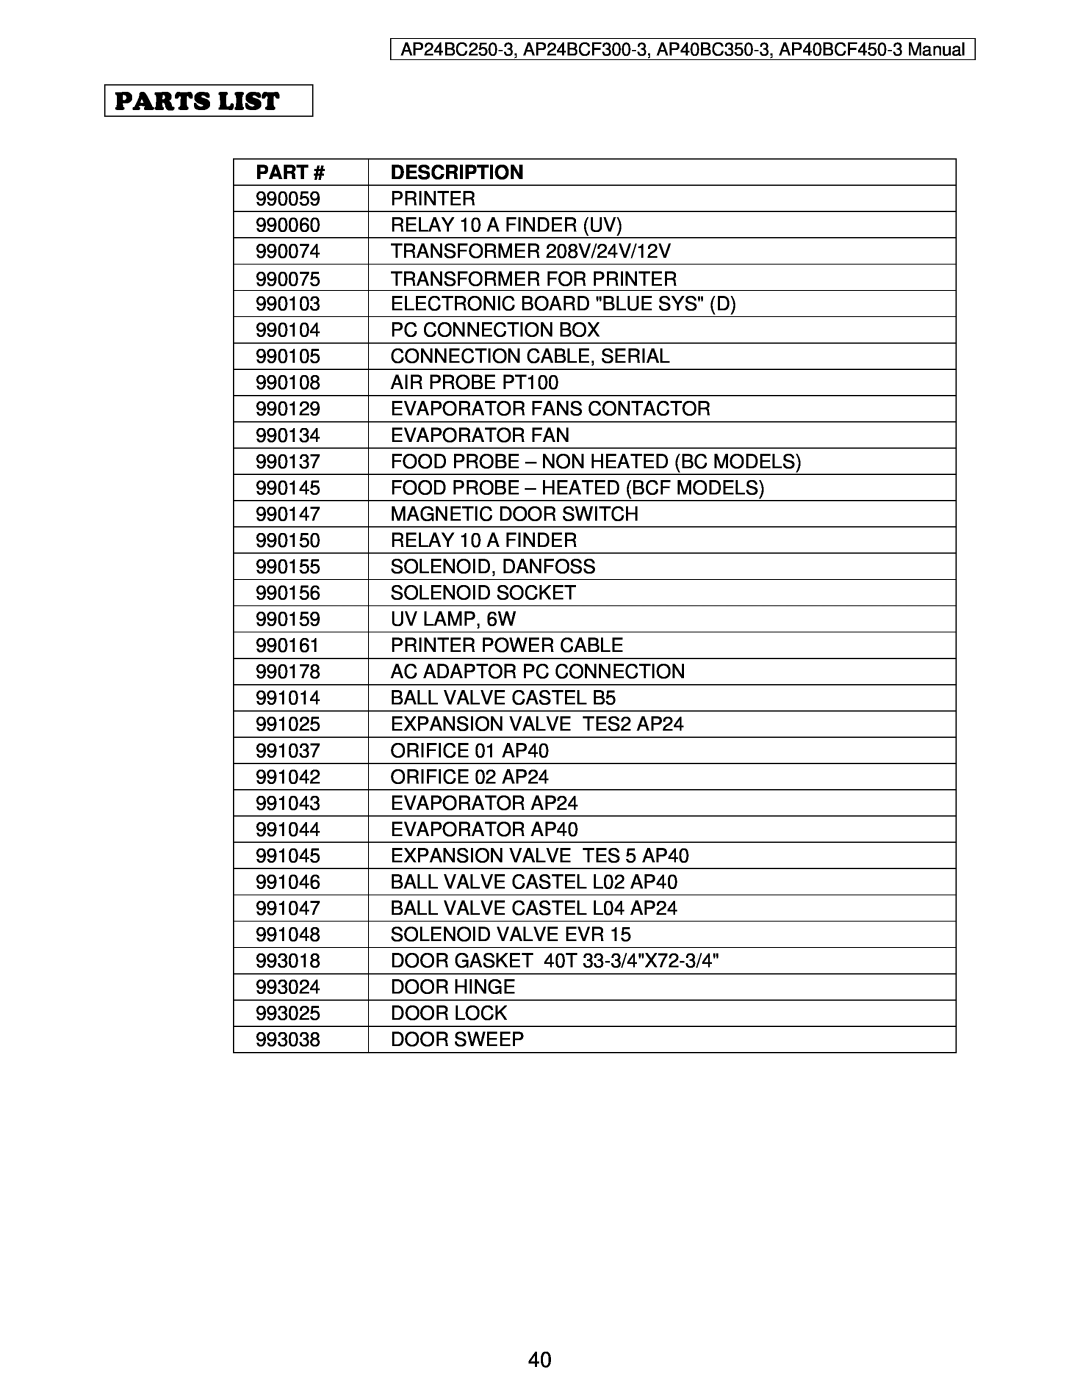 American Panel AP24BC250-3 user manual Parts List, Part #, Description 